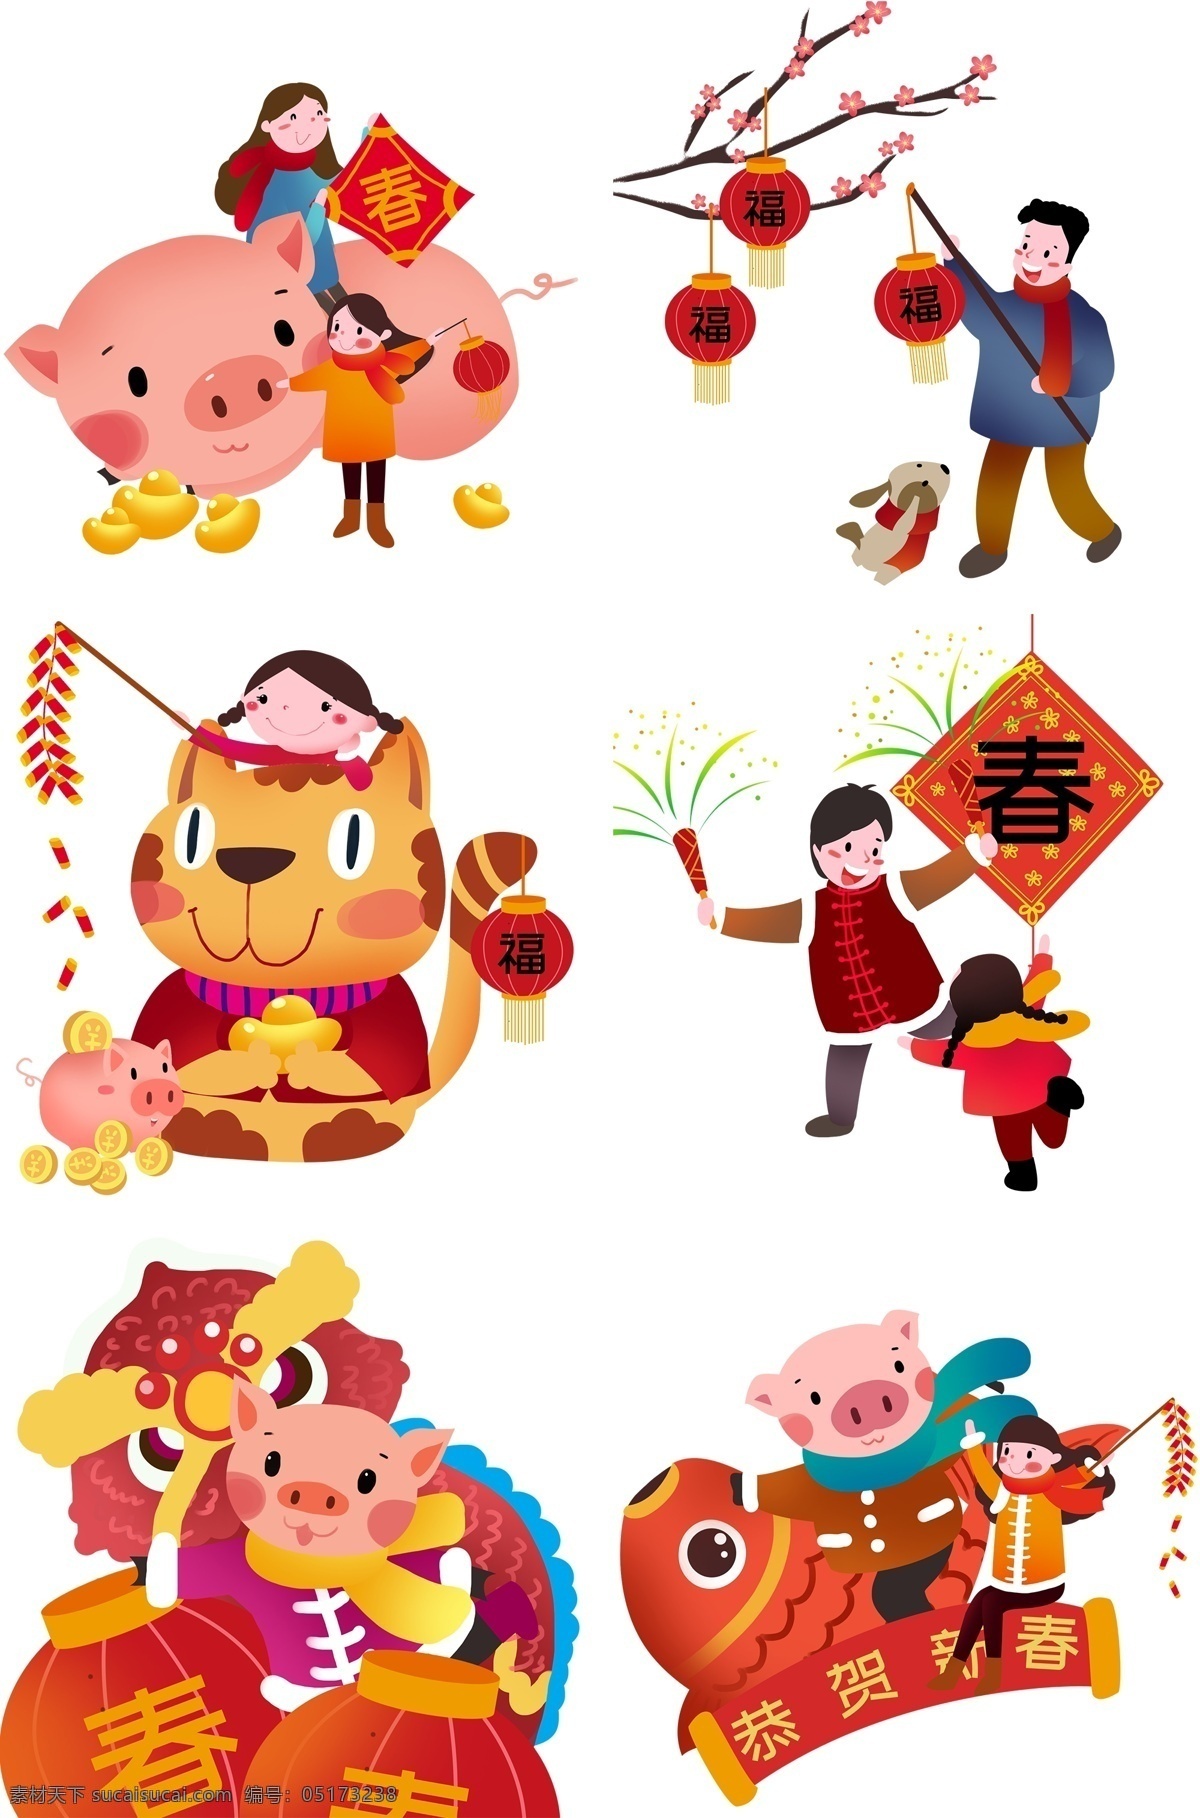 手绘 猪年 合集 插画 可爱的小狗 可爱的小猪 存钱罐 粉红色的梅花 新春福字 新年插画 卡通插画